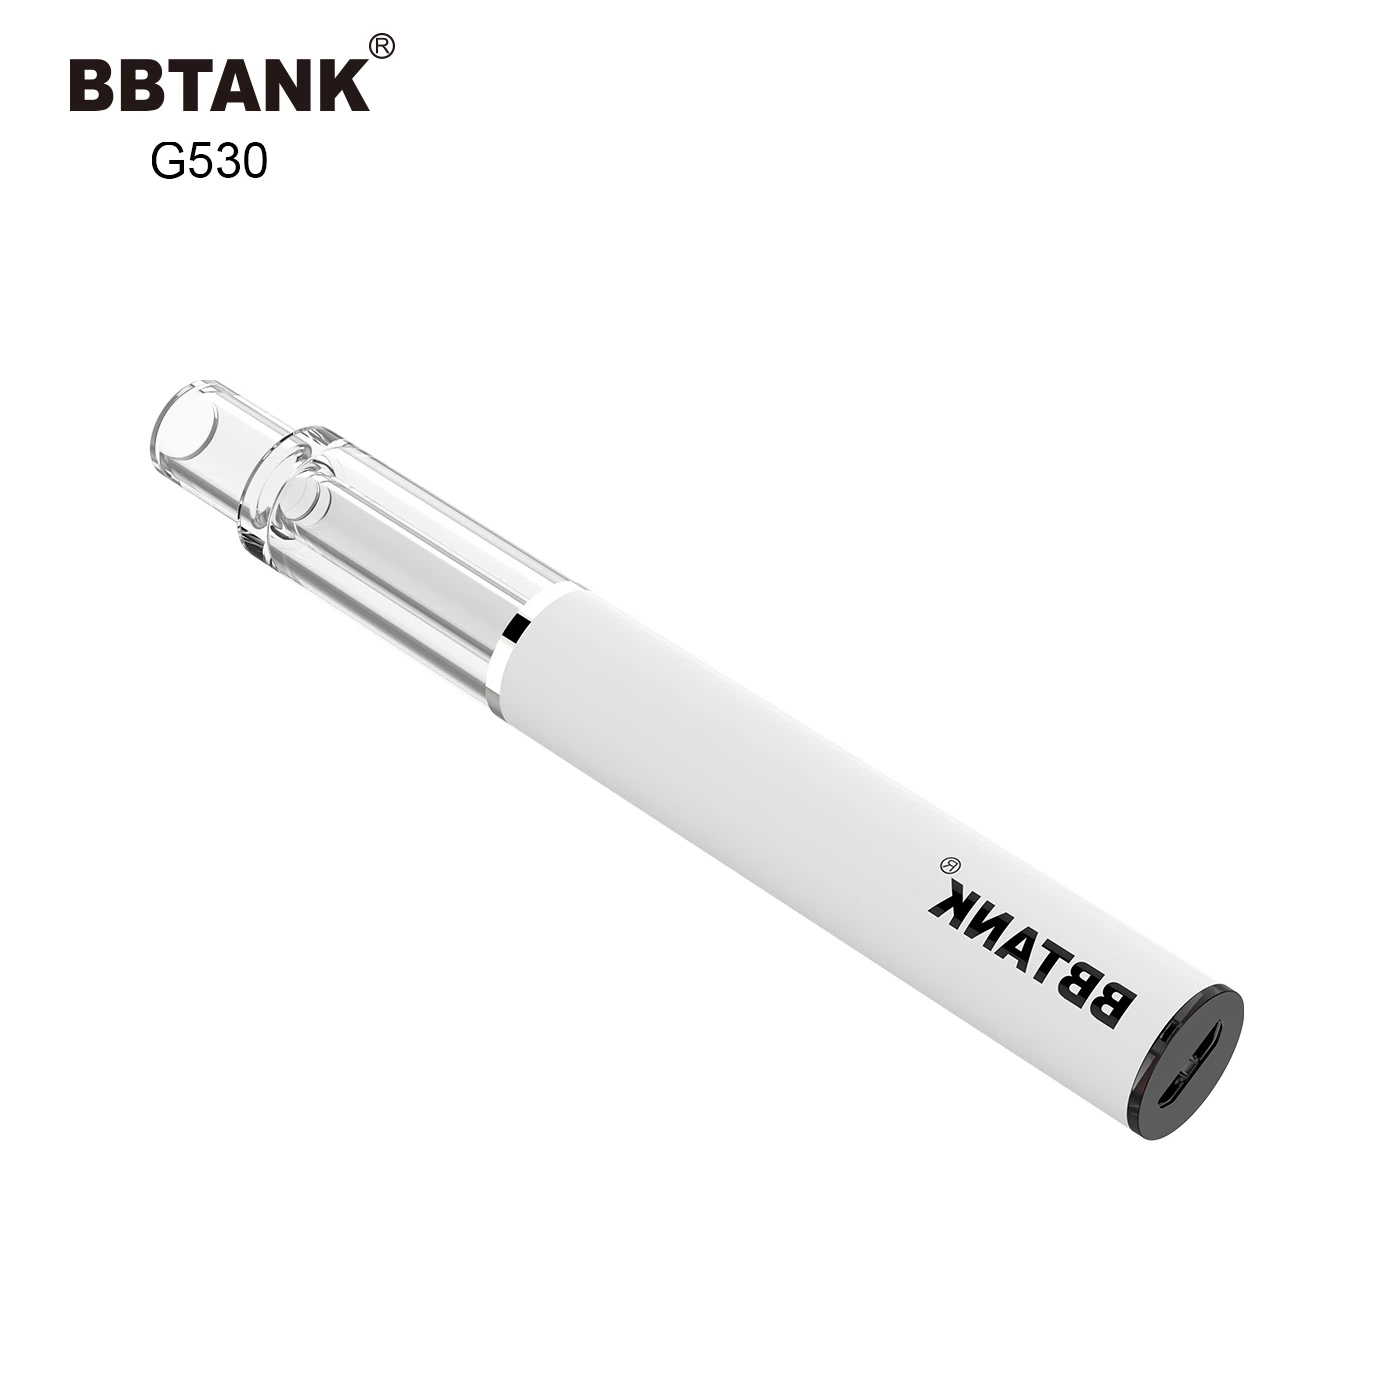 Style de plume de quartz Vape complet de la cartouche d'huile épaisse Bbtank Pen Cigarette électriques rechargeables